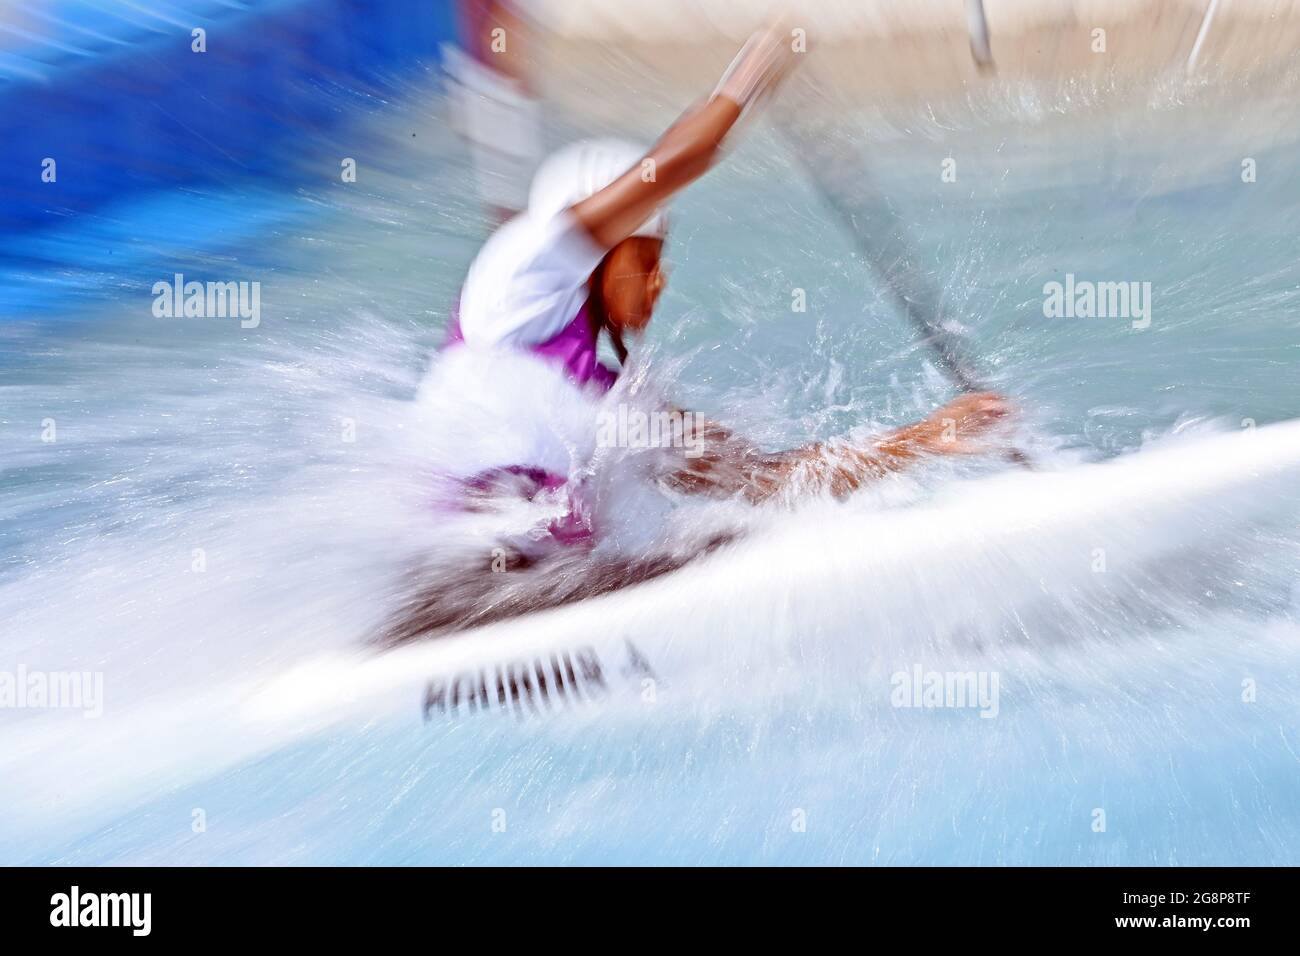 Général, fonction, flou, dynamique, action. Entraînement canoë slalom, canoë slalom, eau vive le 22 juillet 2021, Kasai Canoe Slalom Centre. Jeux olympiques d'été 2020, de 23.07. - 08.08.2021 à Tokyo/Japon. Banque D'Images